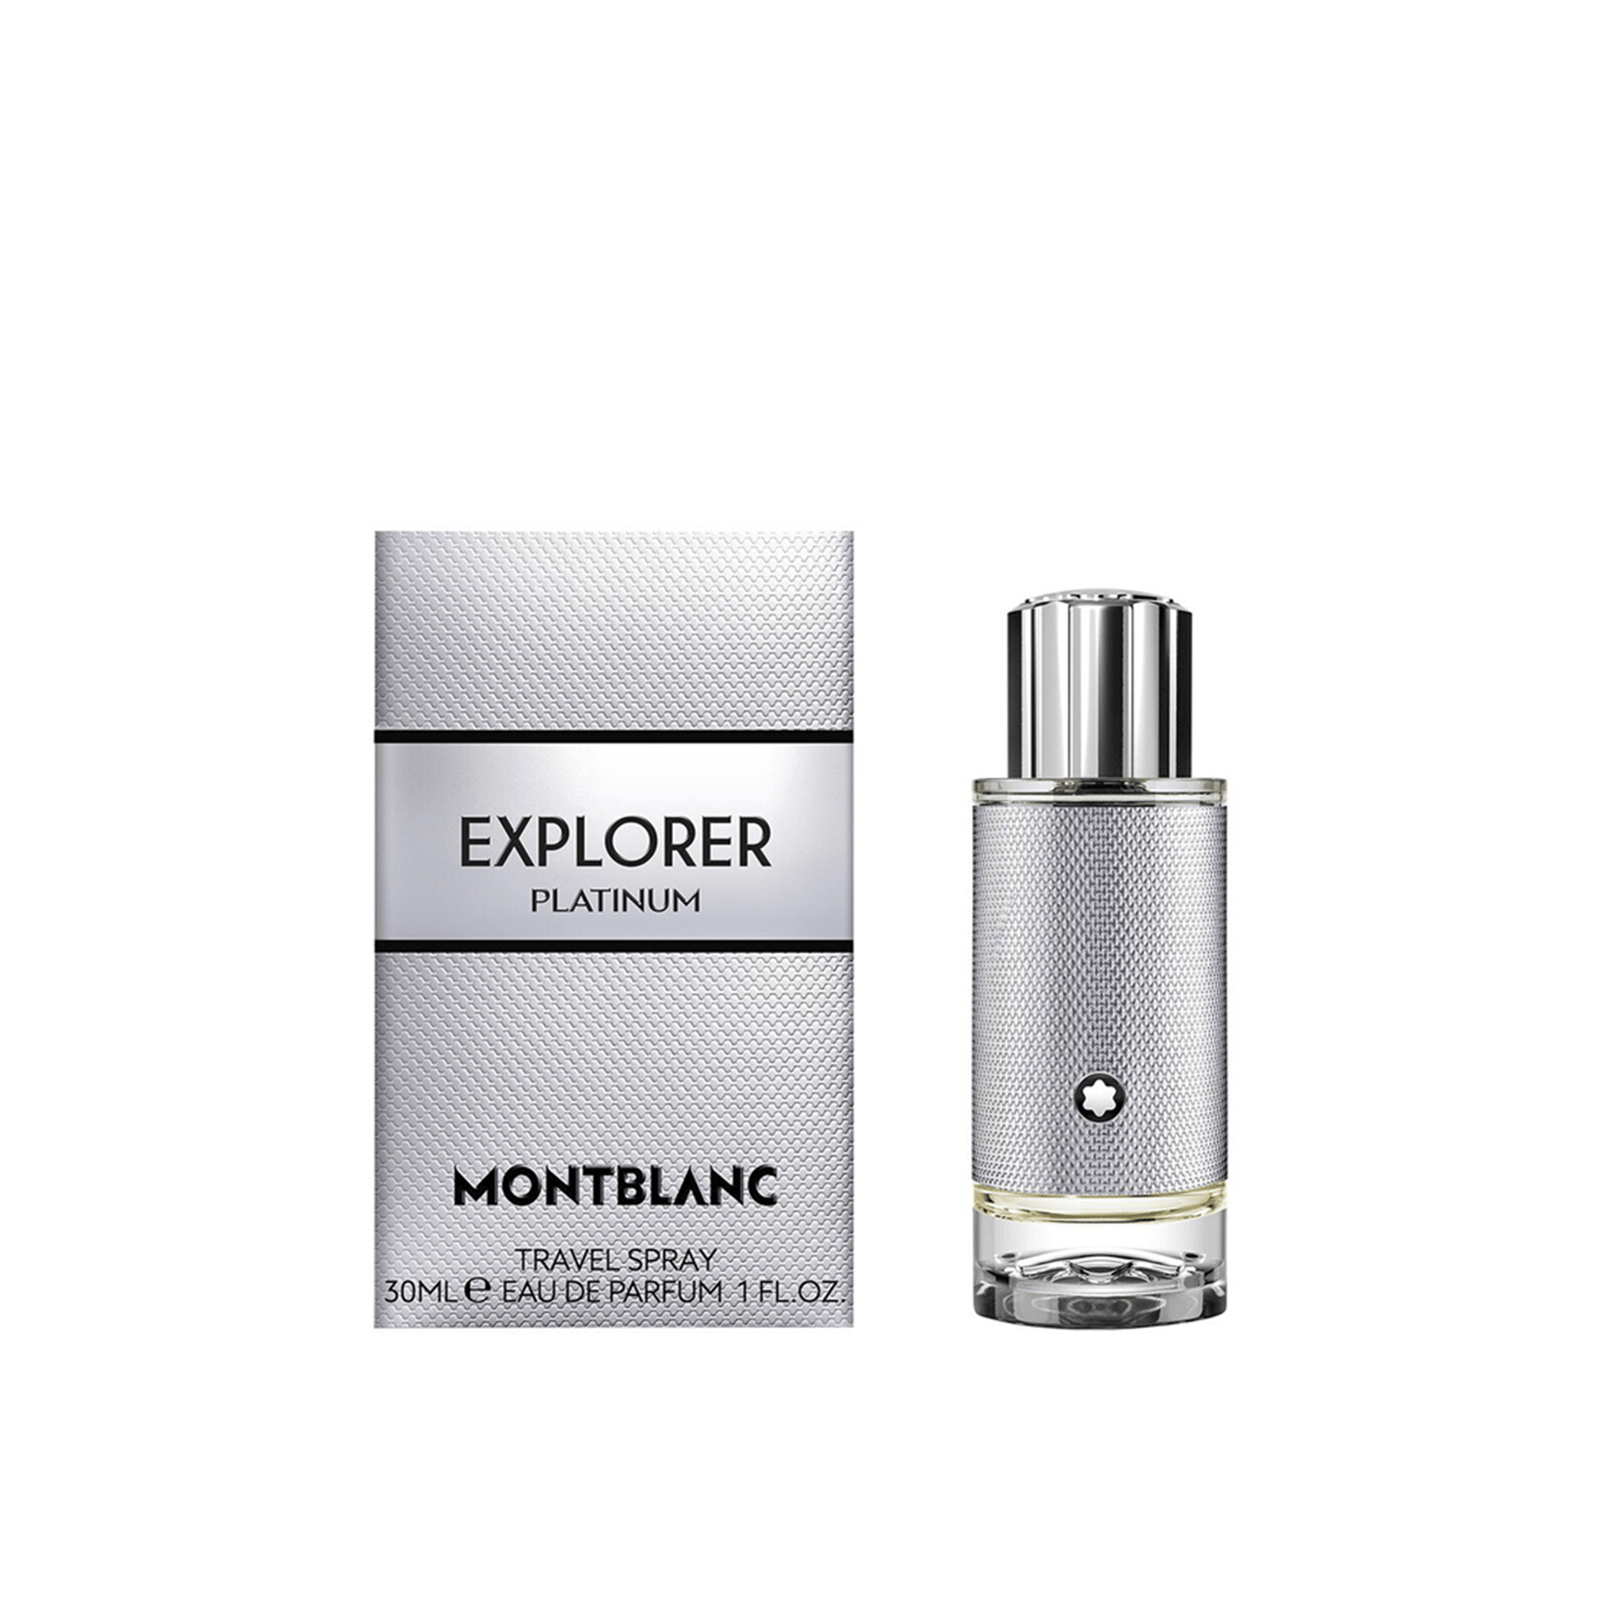 Montblanc Explorer Platinum Eau de Parfum 30ml (1 fl oz)